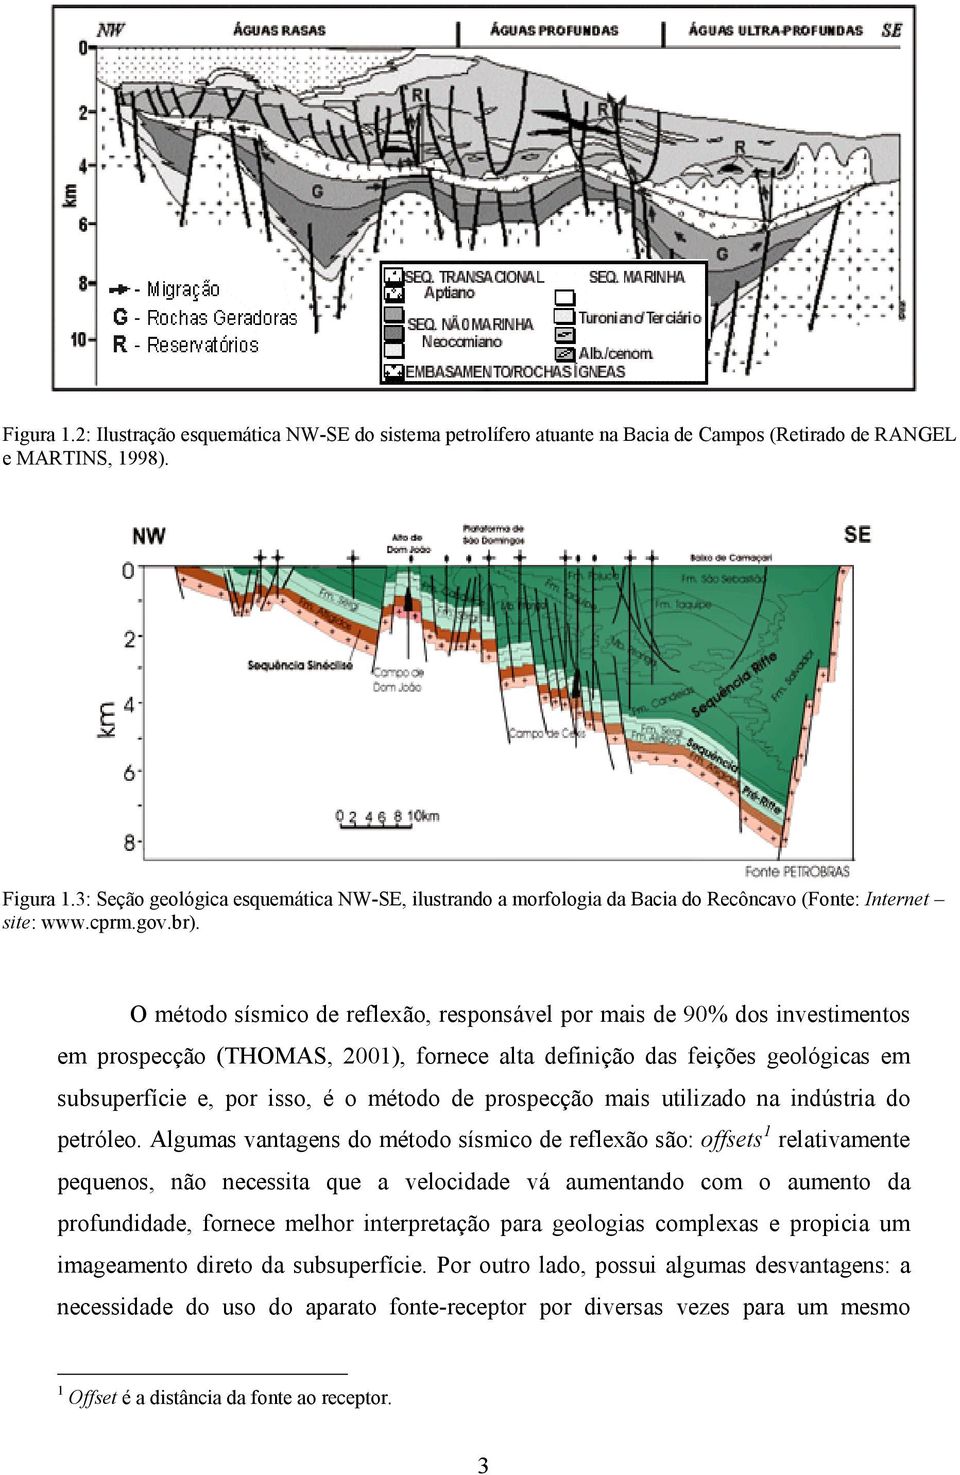 O método sísmico de refleão responsável por mais de 90% dos investimentos em prospecção THOMAS 001 fornece alta definição das feições geológicas em subsuperfície e por isso é o método de prospecção